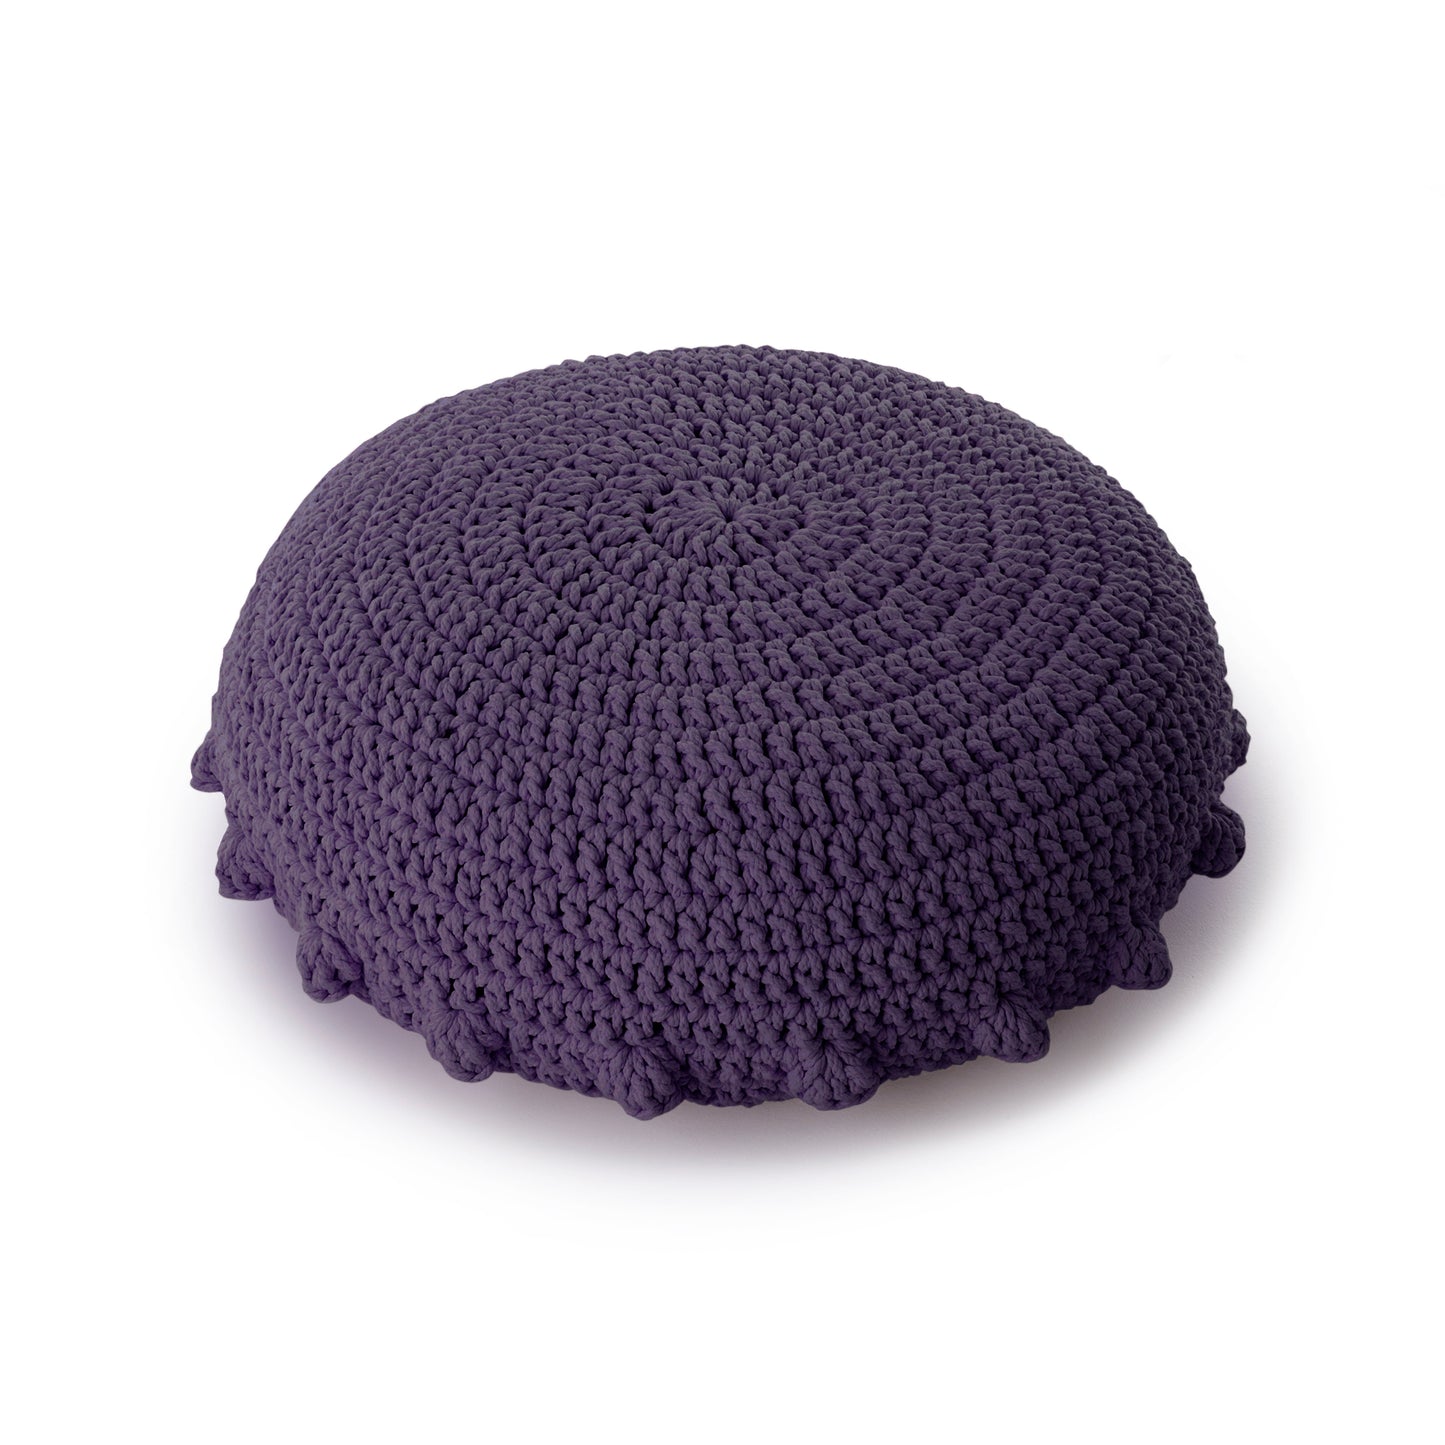 Puff Disco em crochê Roxo, com fio 100% algodão.  Fechamento com zíper, possibilitando a remoção da capa para lavagem.  Dimensões: Altura - 20cm; Diâmetro - 85cm. 